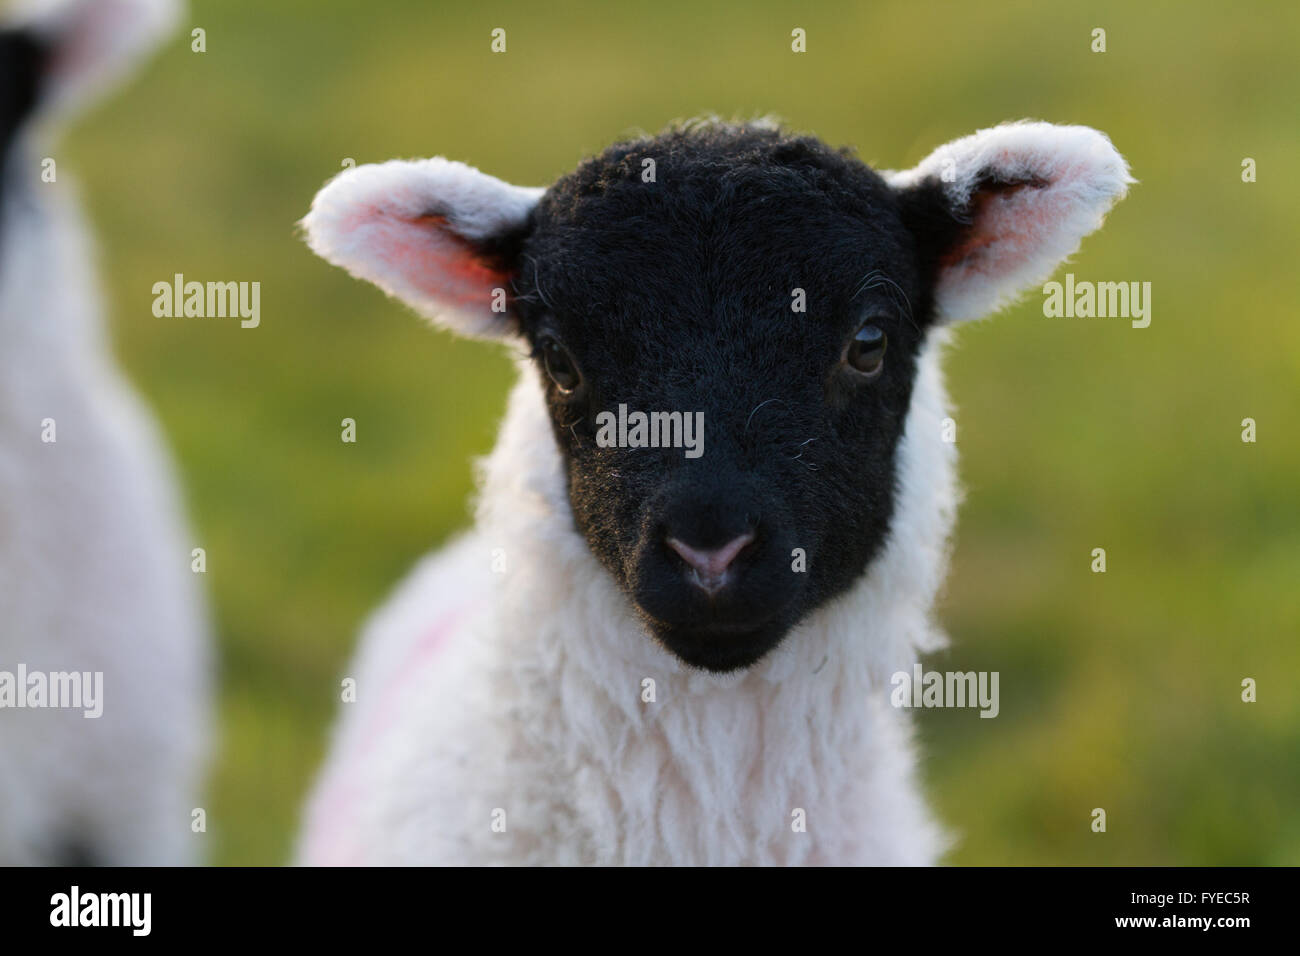 Carino colpo di testa di un agnello swaledale con un totalmente nero testa. Foto Stock